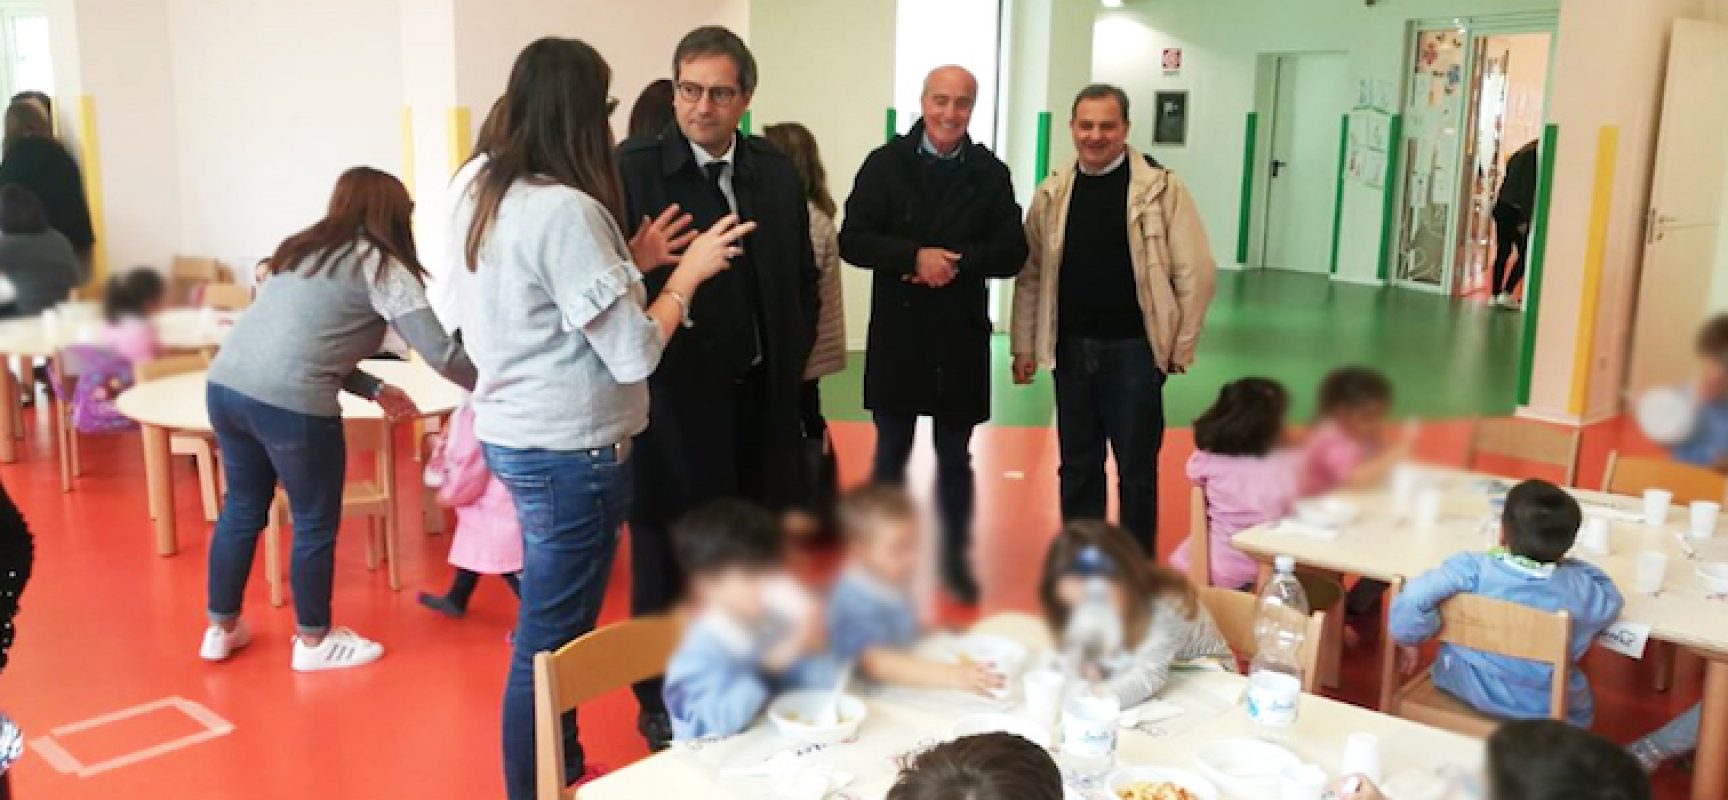 Scuola “Sandro Pertini”, sopralluogo del sindaco Angarano per verificare servizio mensa